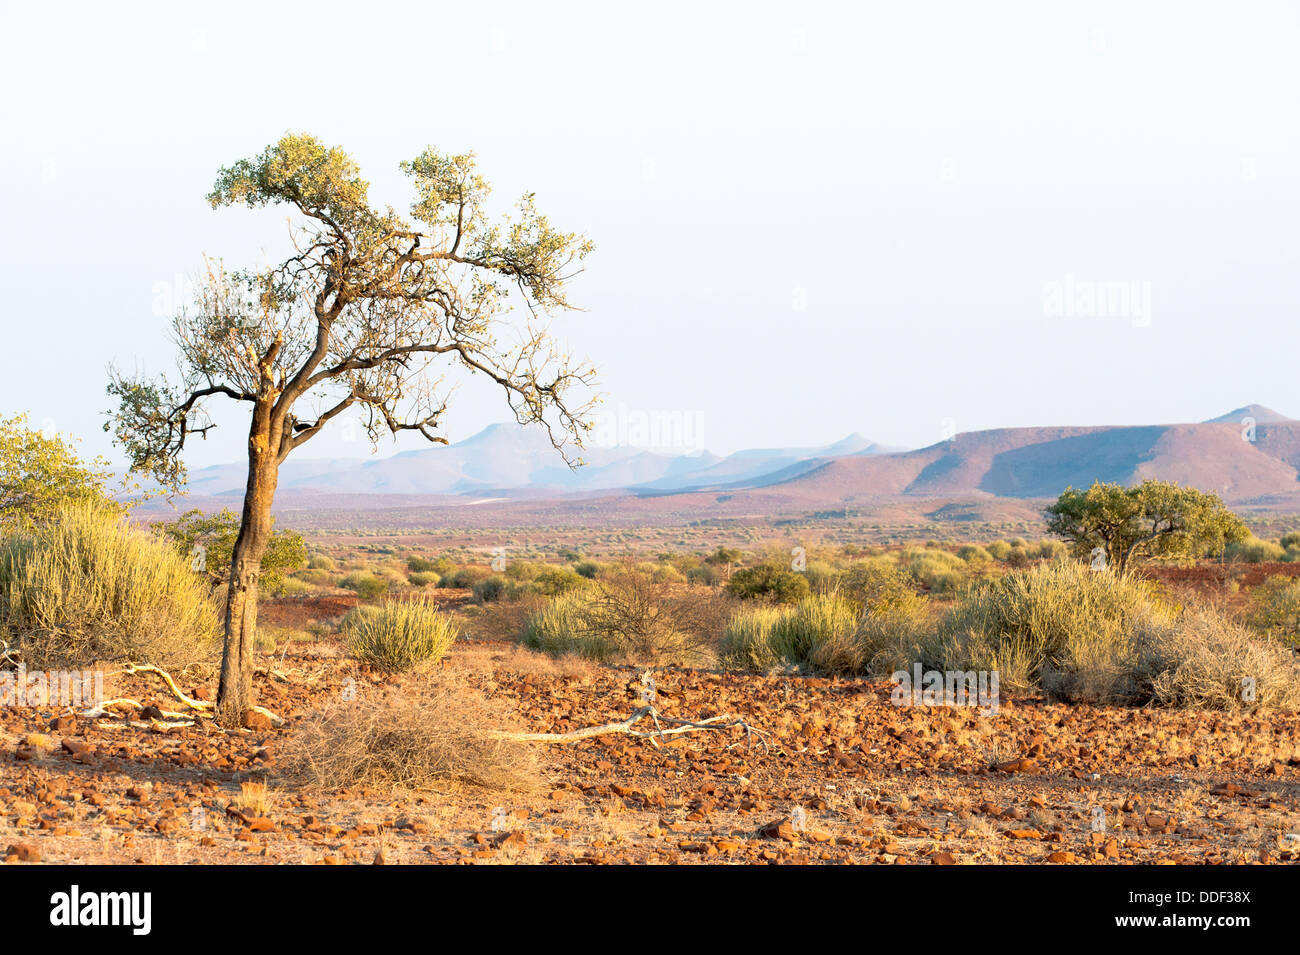 Ein einzelner Baum steht in einer trockenen, offenen Landschaft in der Kunene Region, Namibia Stockfoto